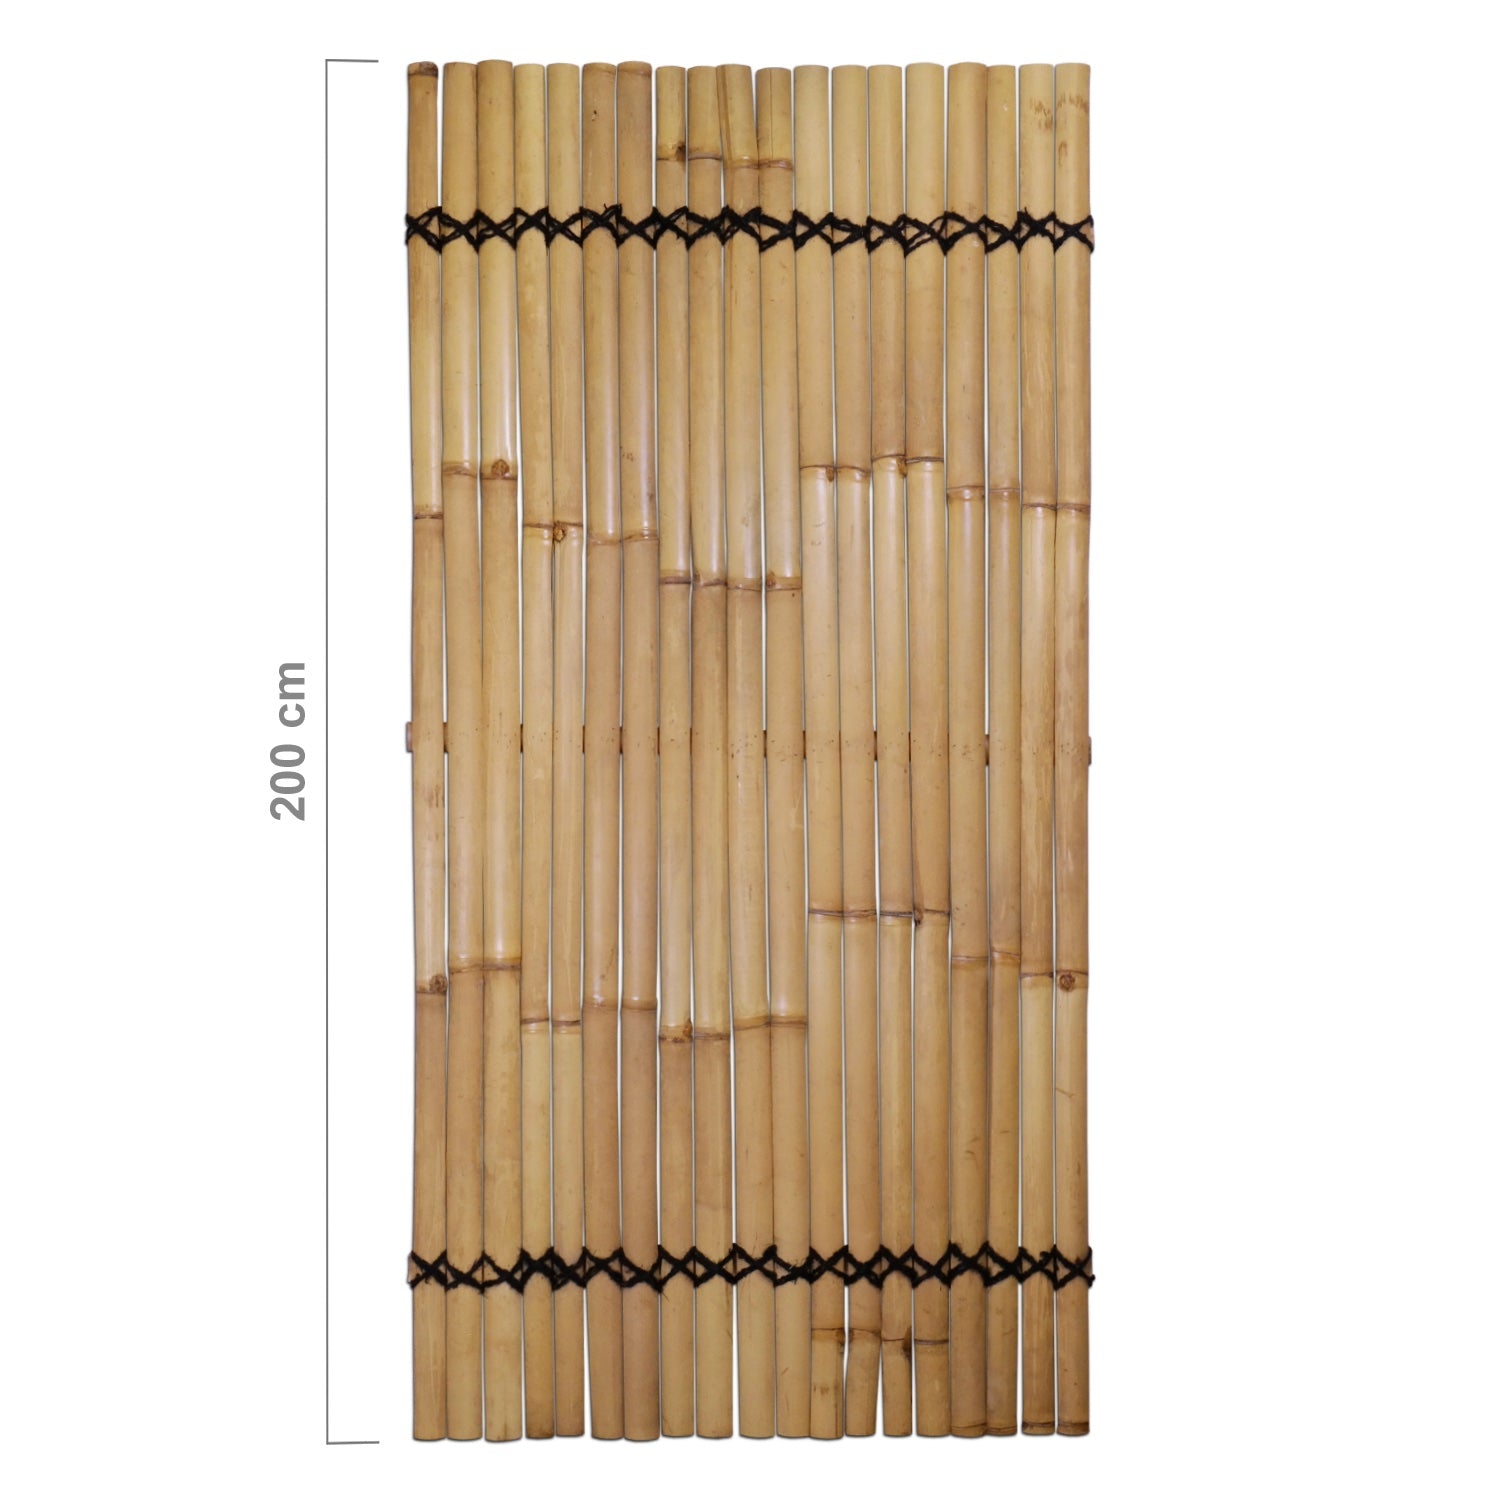 Bamboo Fence Slats Natural